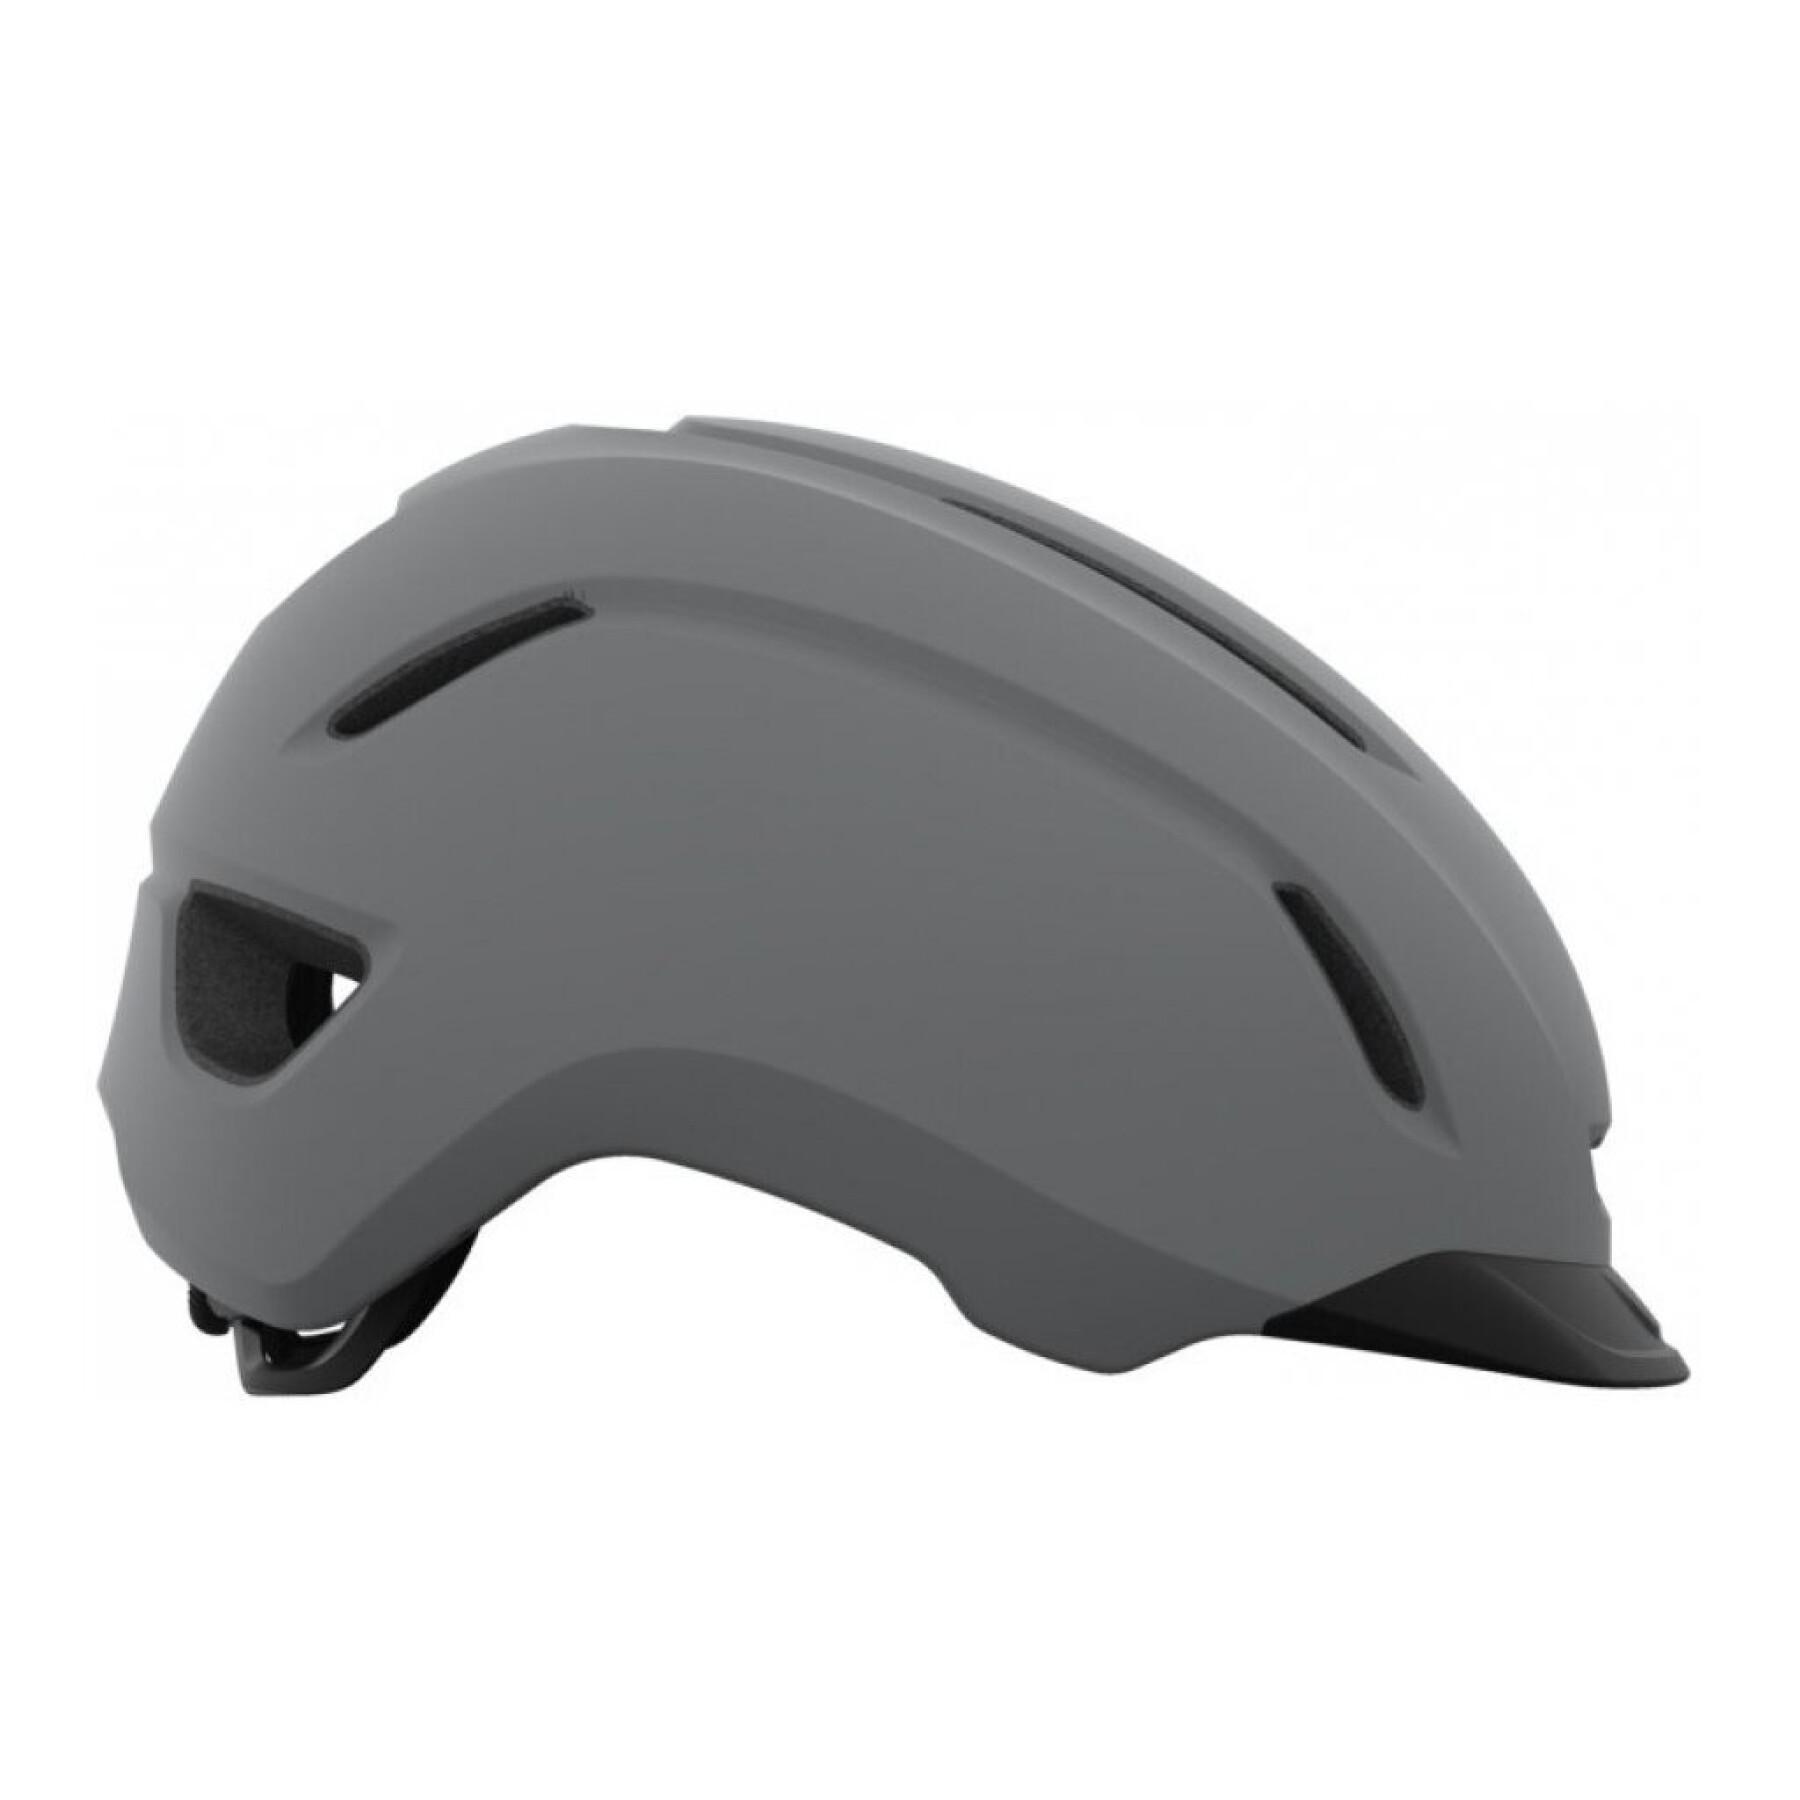 New bicycle helmet Giro Caden II